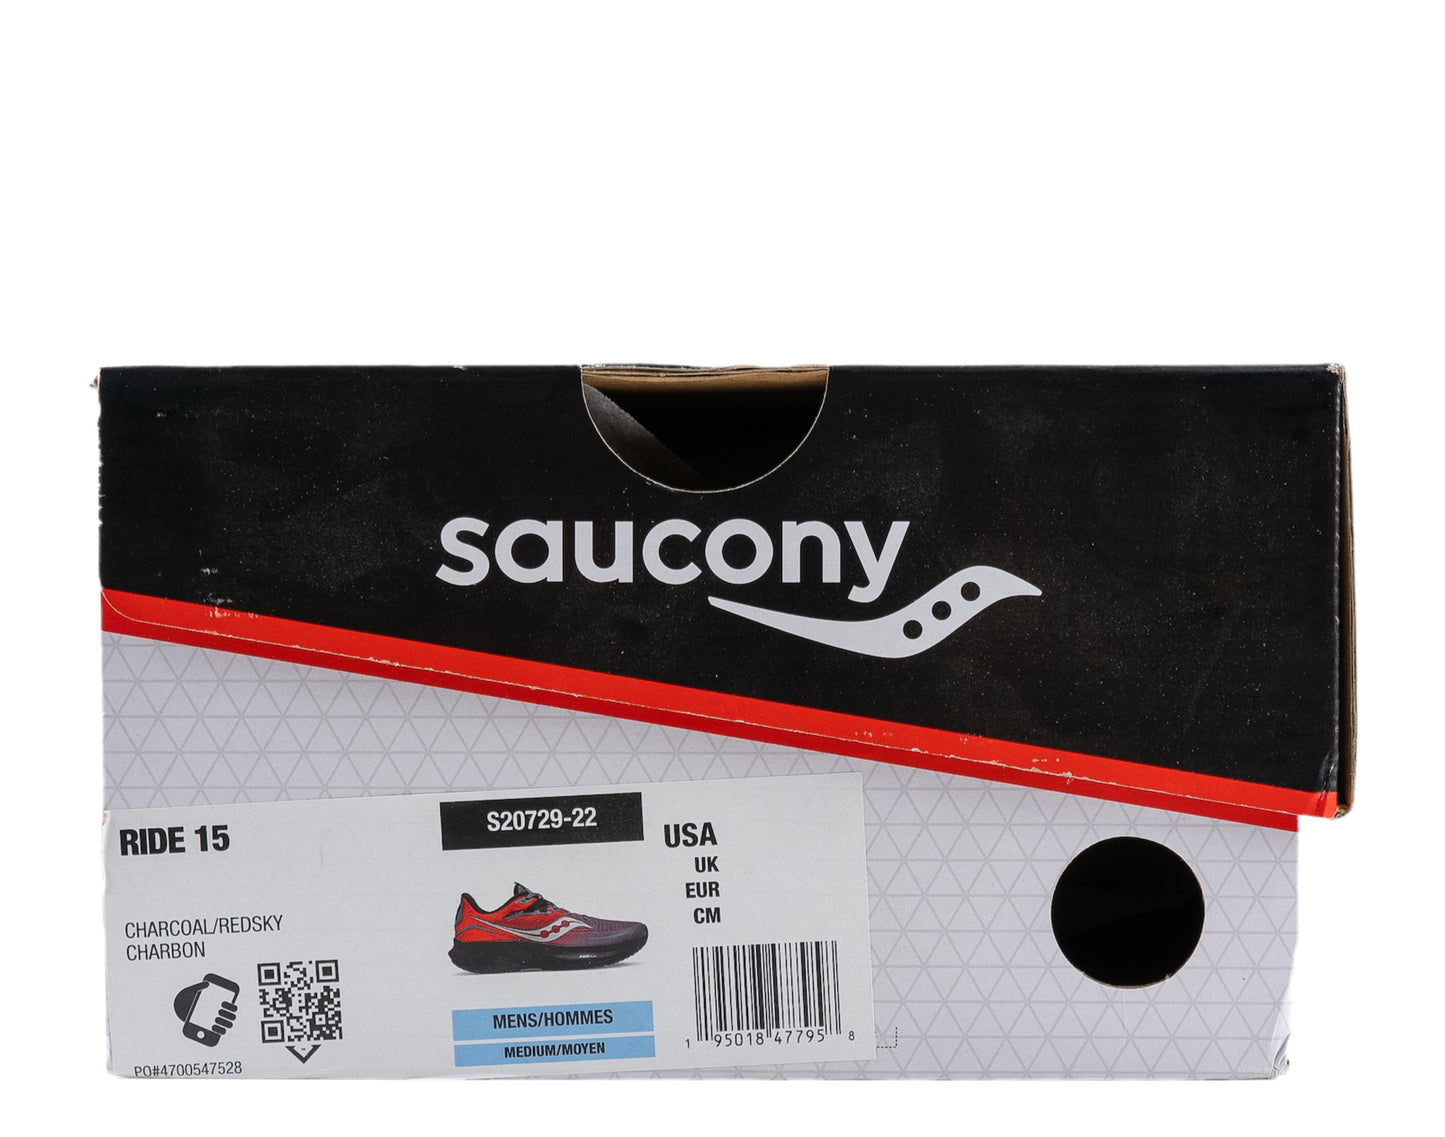 Saucony Ride 15 Men's Running Shoes